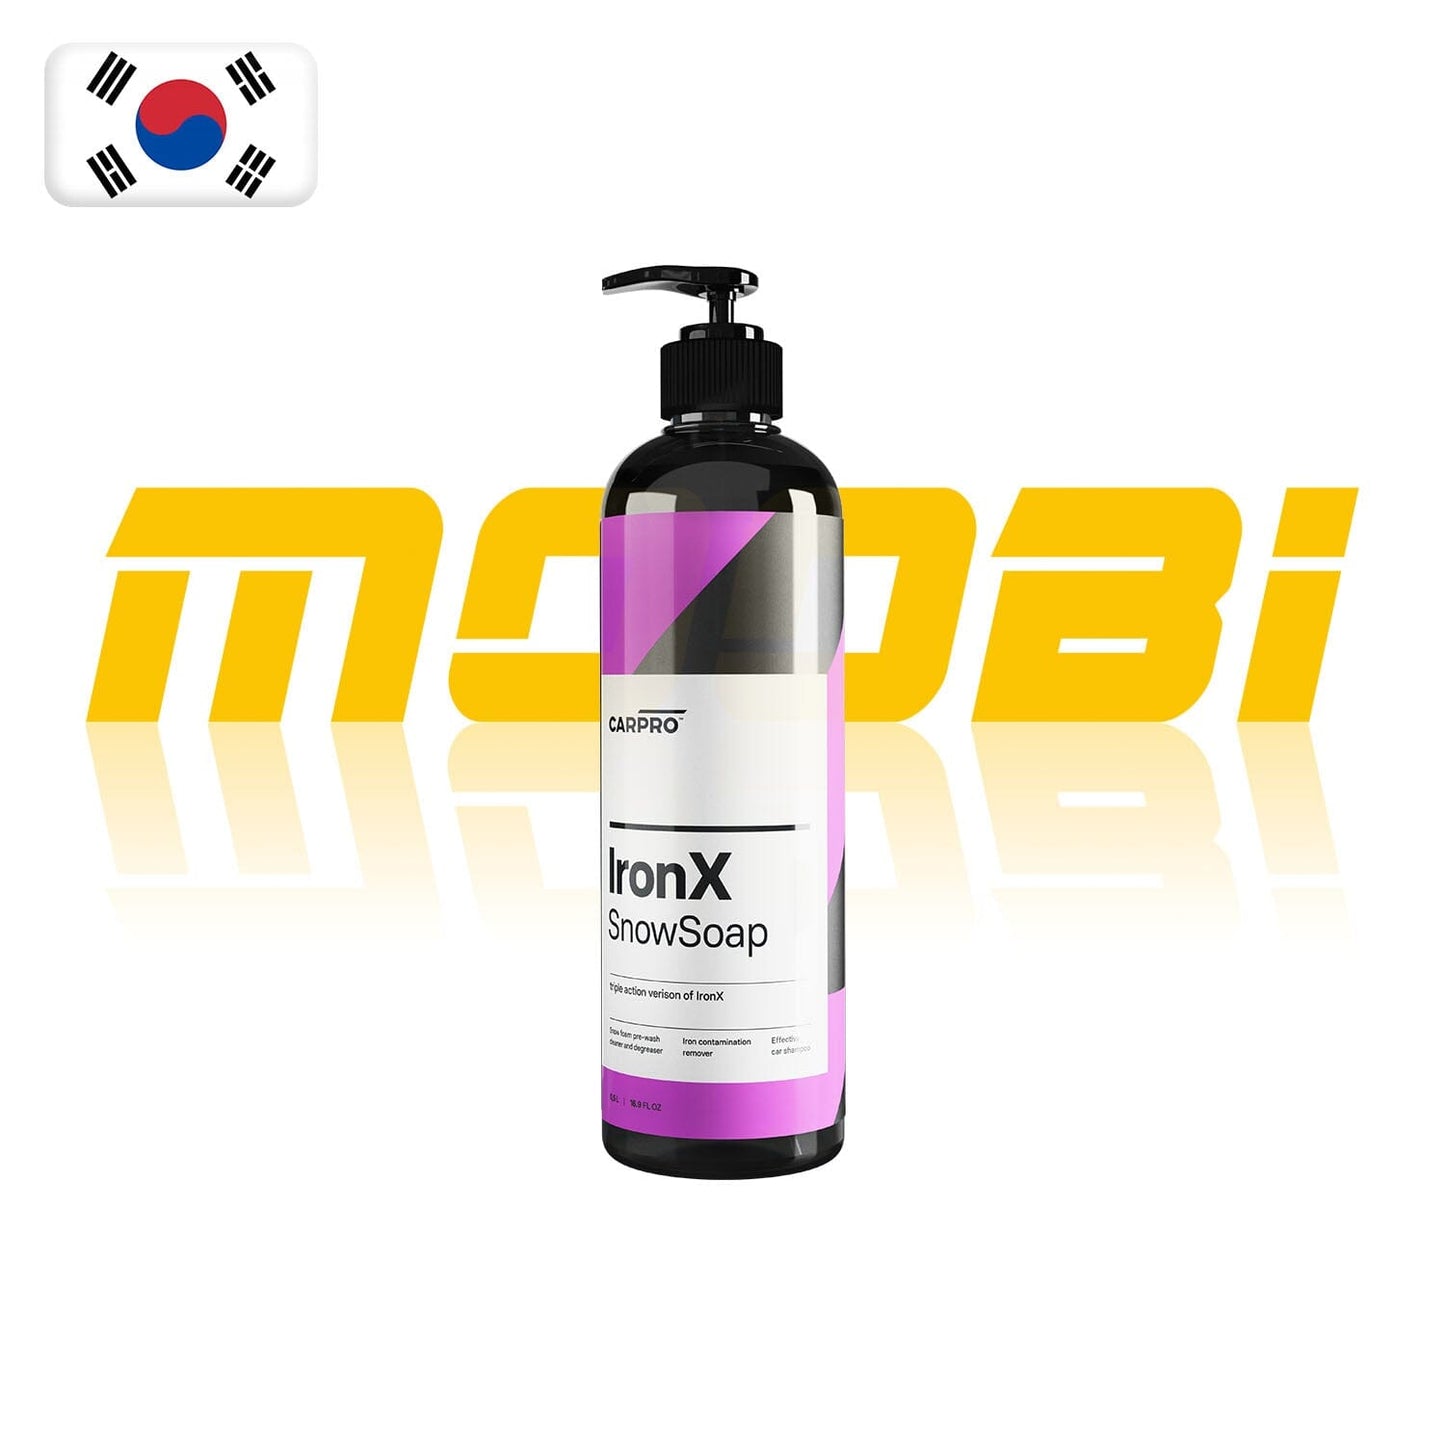 CARPRO | 鐵銹清洗車泡泡 Iron X Snow Soap | 韓國製 | MOOBI 香港網上汽車用品店 p1